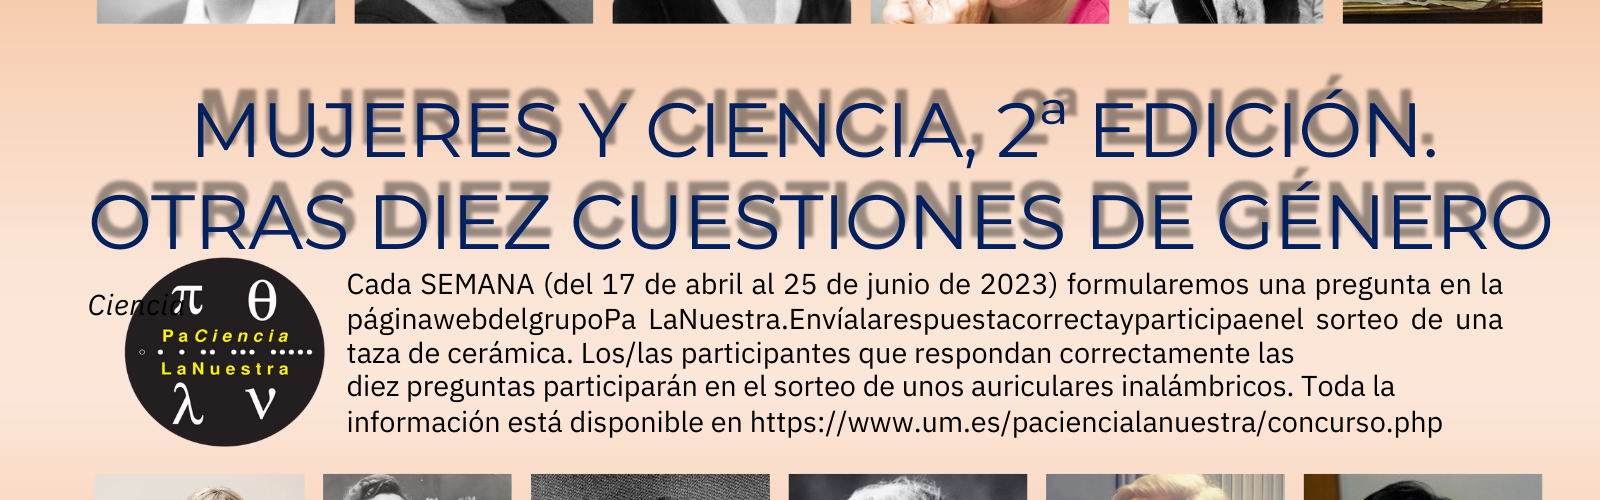 La UMU invita a la comunidad universitaria a participar en la segunda edición del concurso "Mujeres y Ciencia"